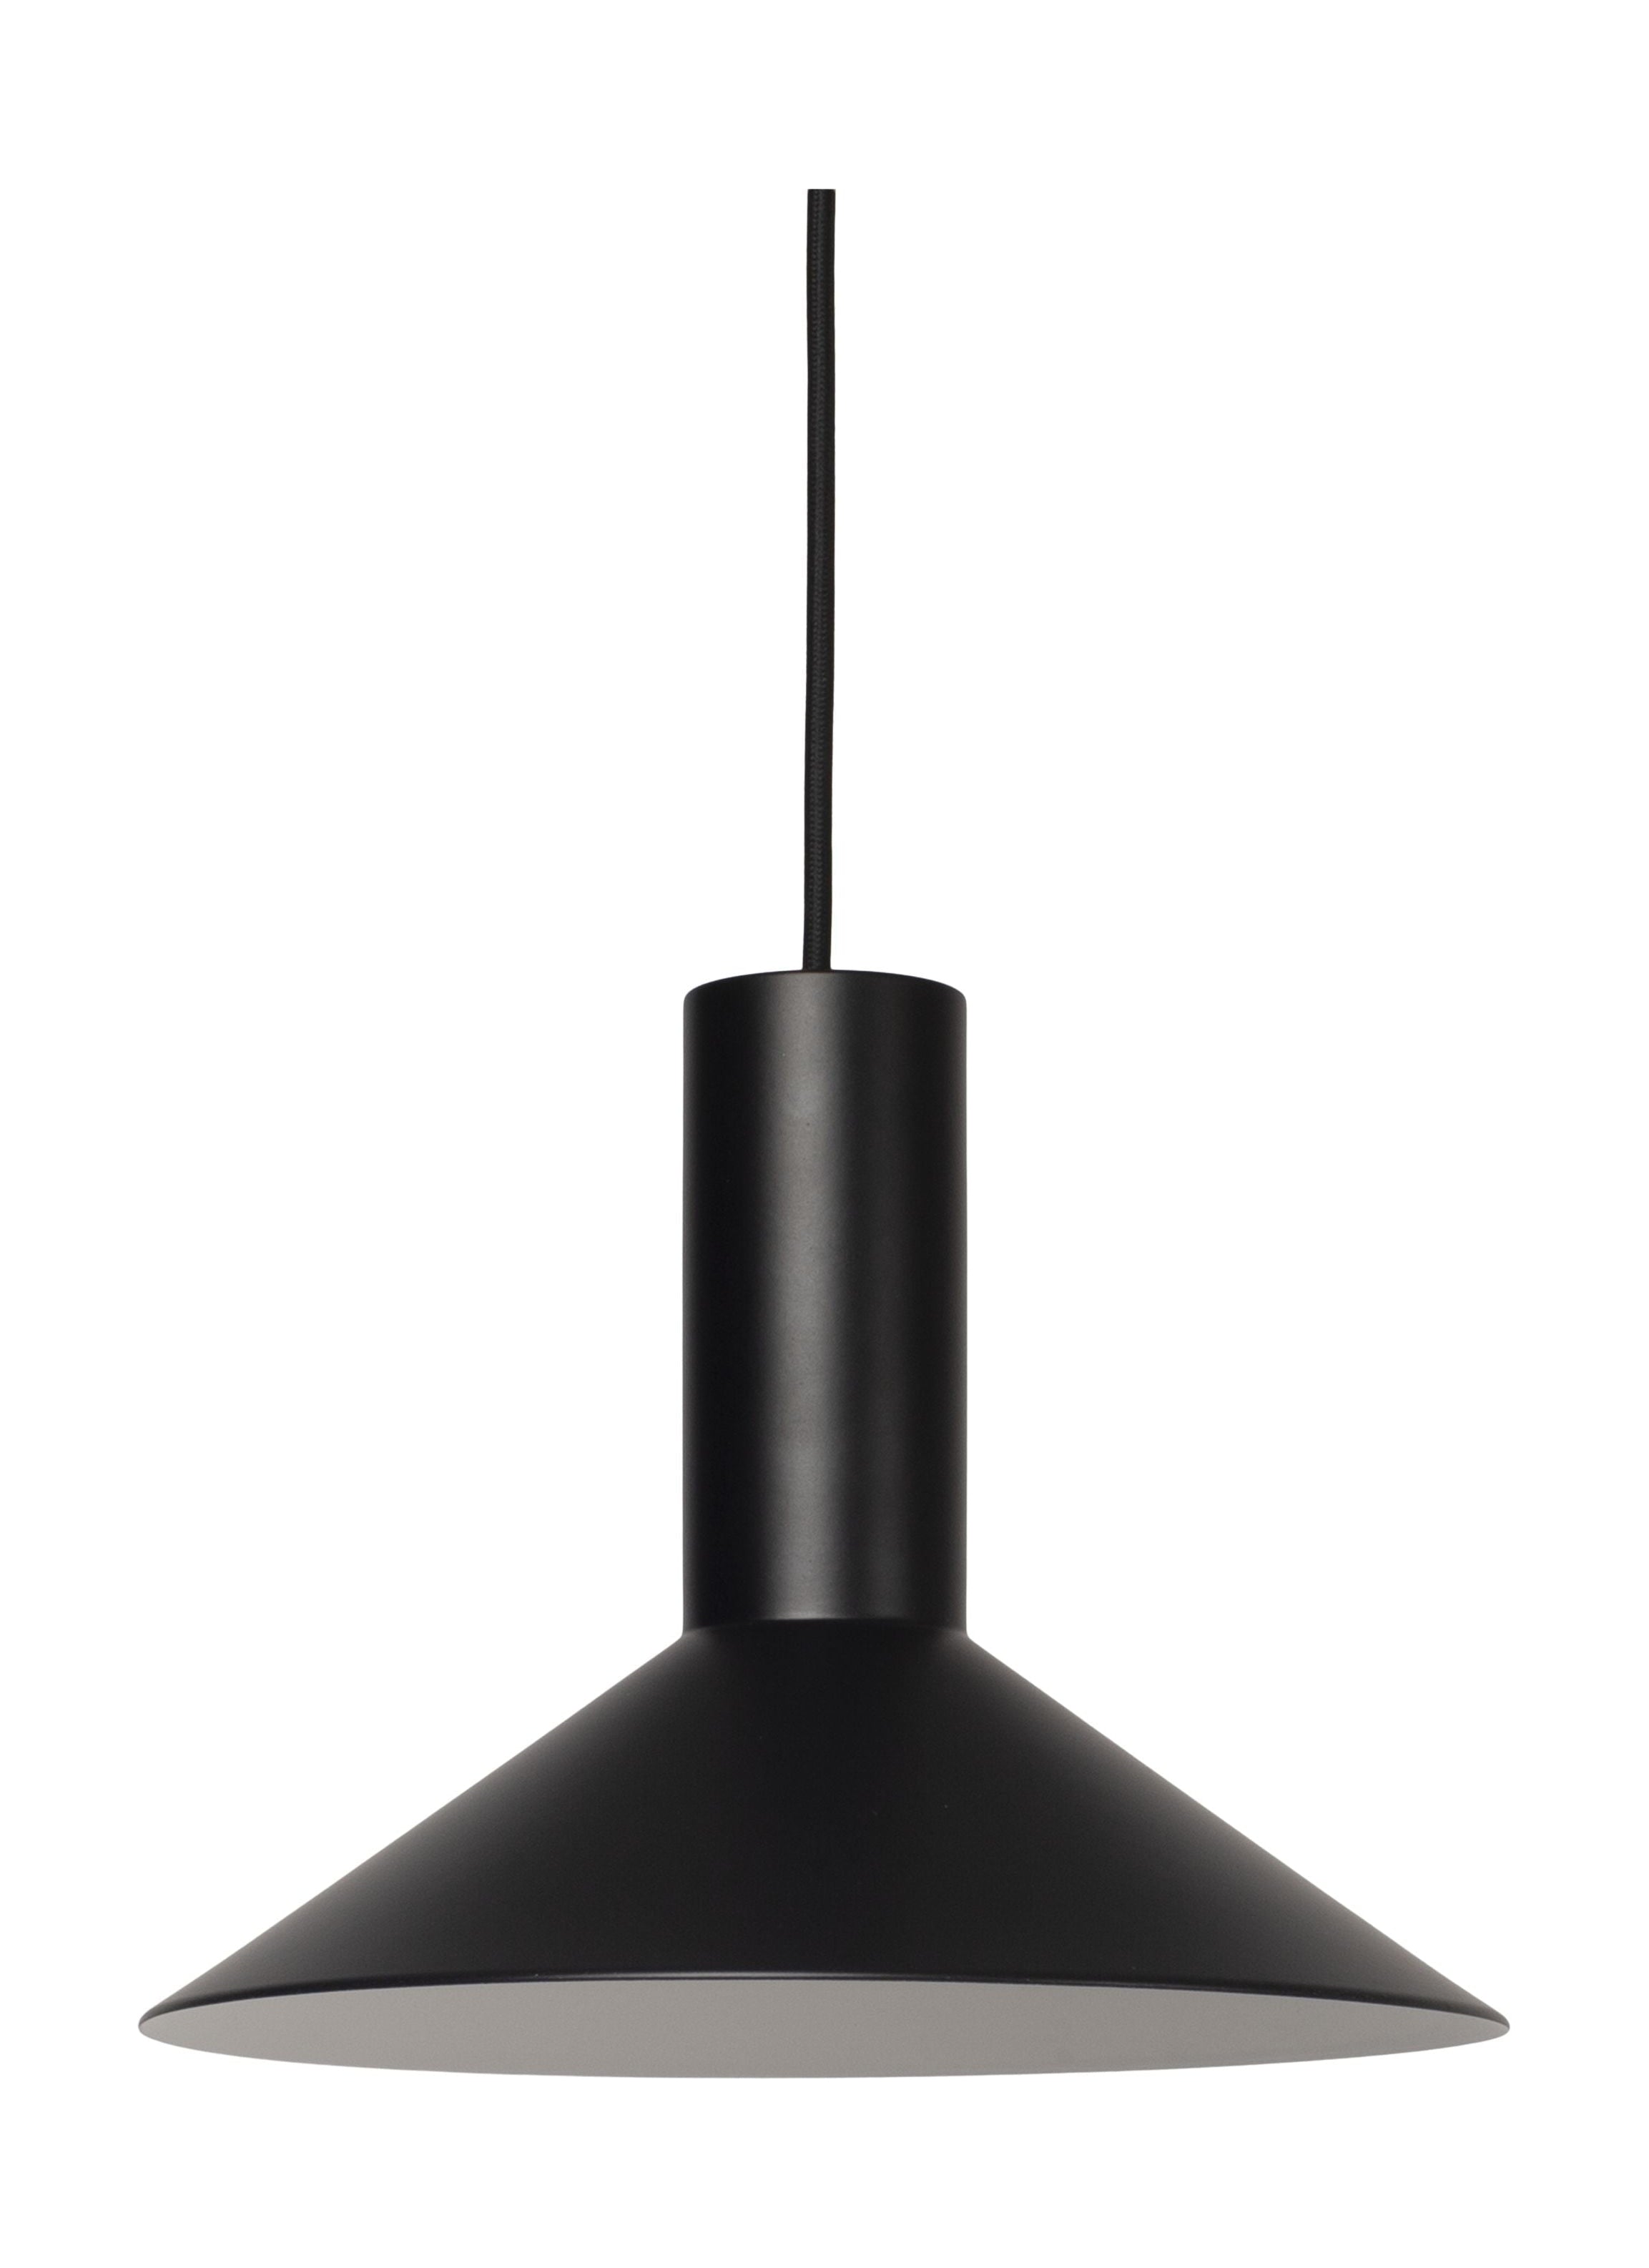 Forårskøbenhavns formel vedhængslampe Ø26, sort